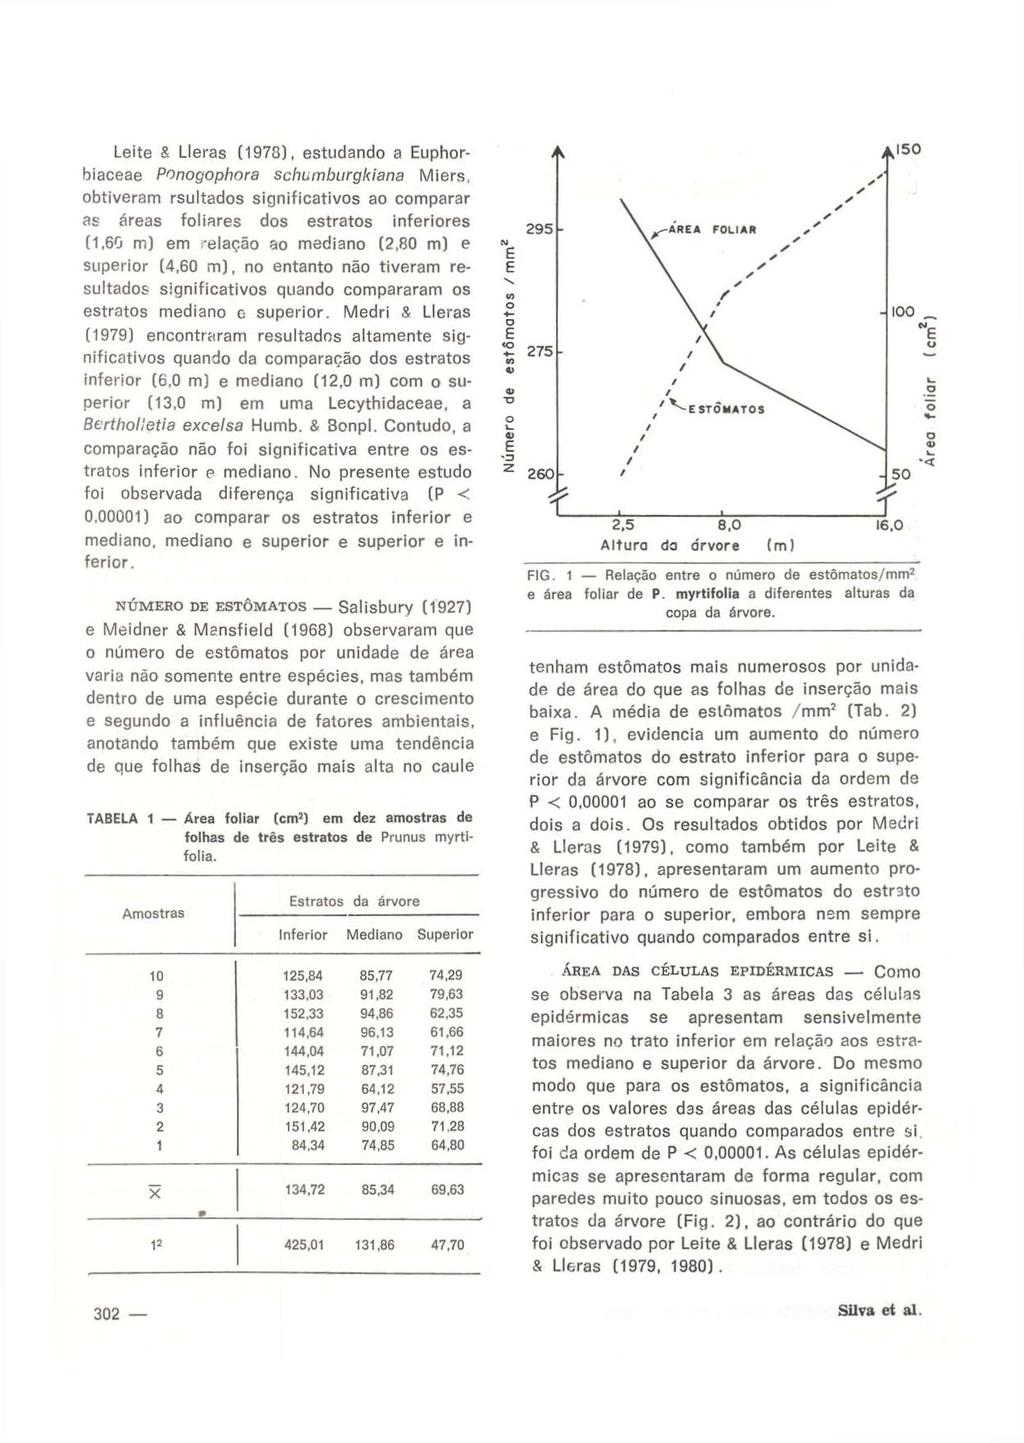 Leite S Lleras (1973), estudando a Euphorbiaceae Ponogophnra schumburgkiana Miers, obtiveram rsultados significativos ao comparar as áreas foliares dos estratos inferiores (1,60 m) em -elação ao